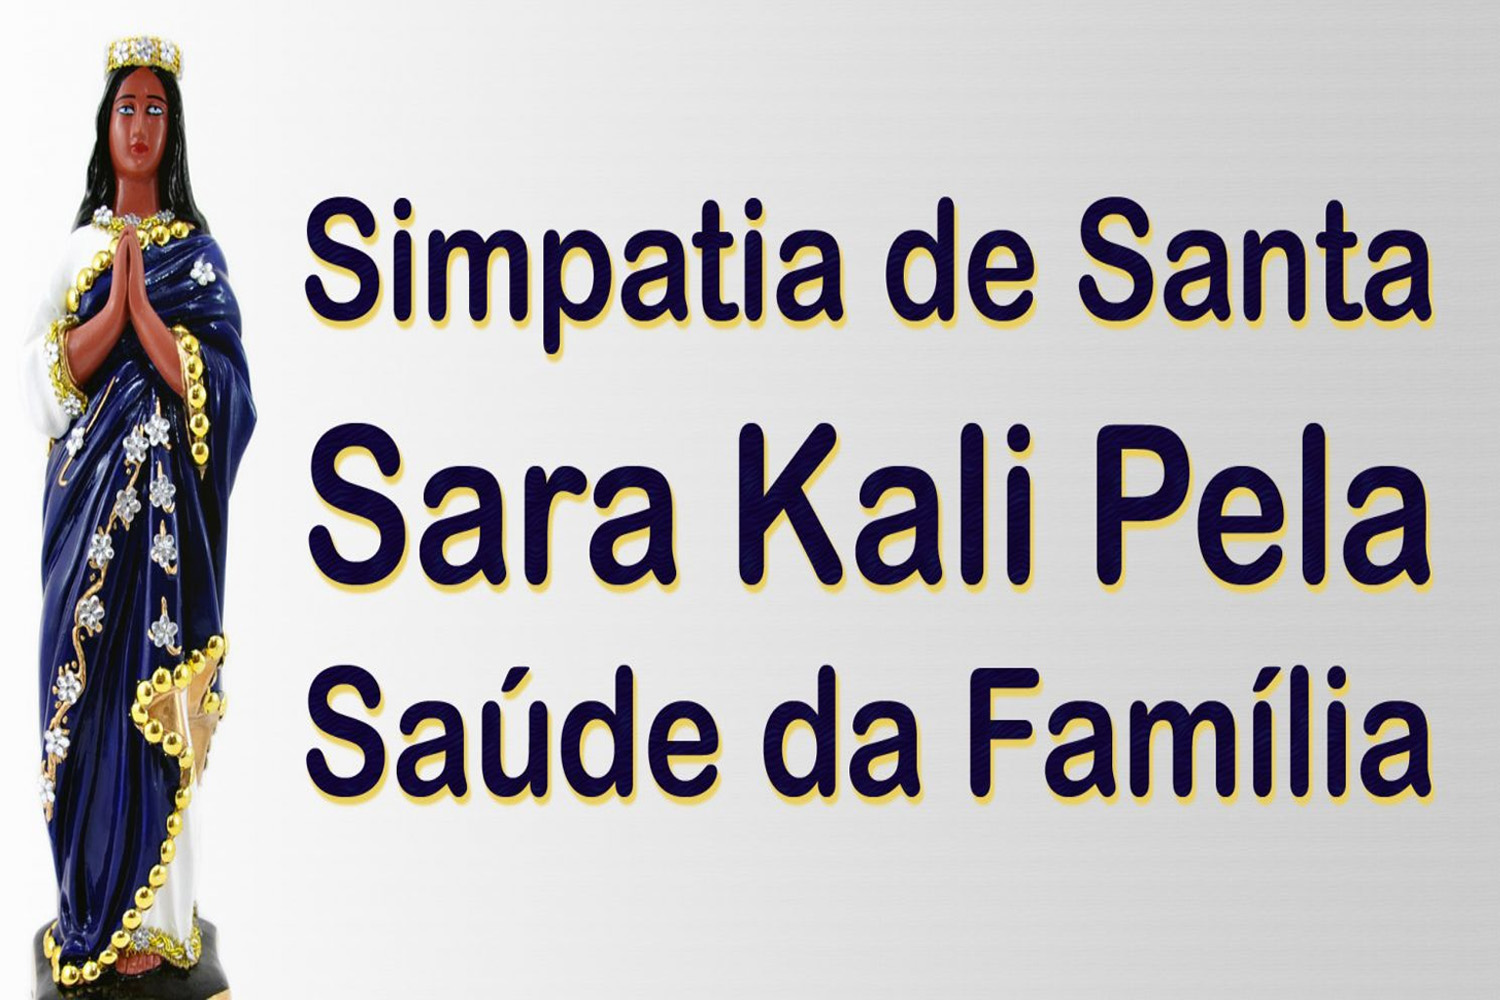 Simpatia de Santa Sara Kali Pela Saúde da Família